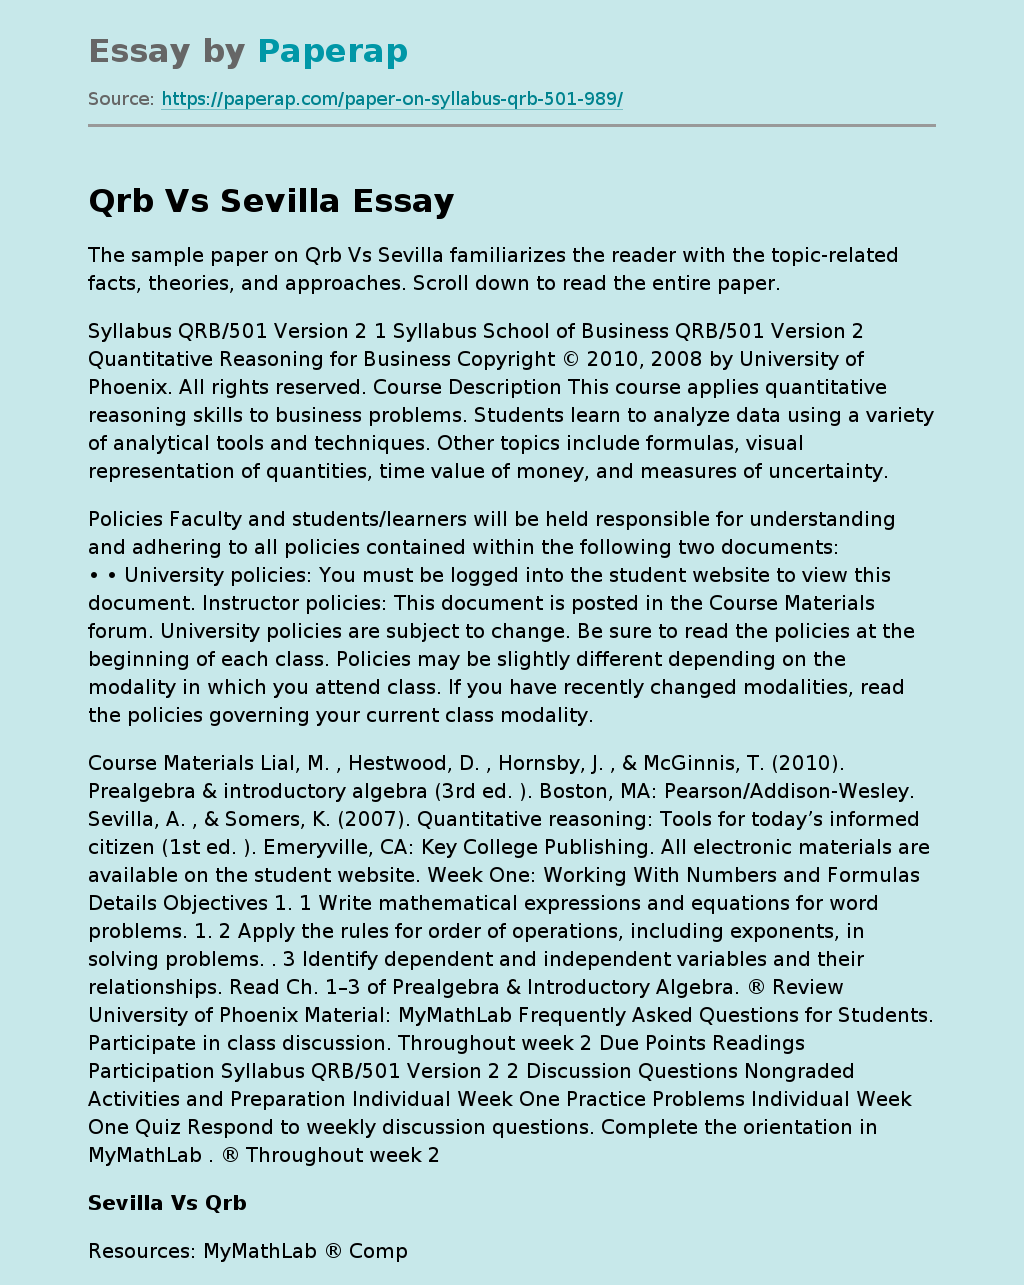 Qrb Vs Sevilla: A Topic Overview